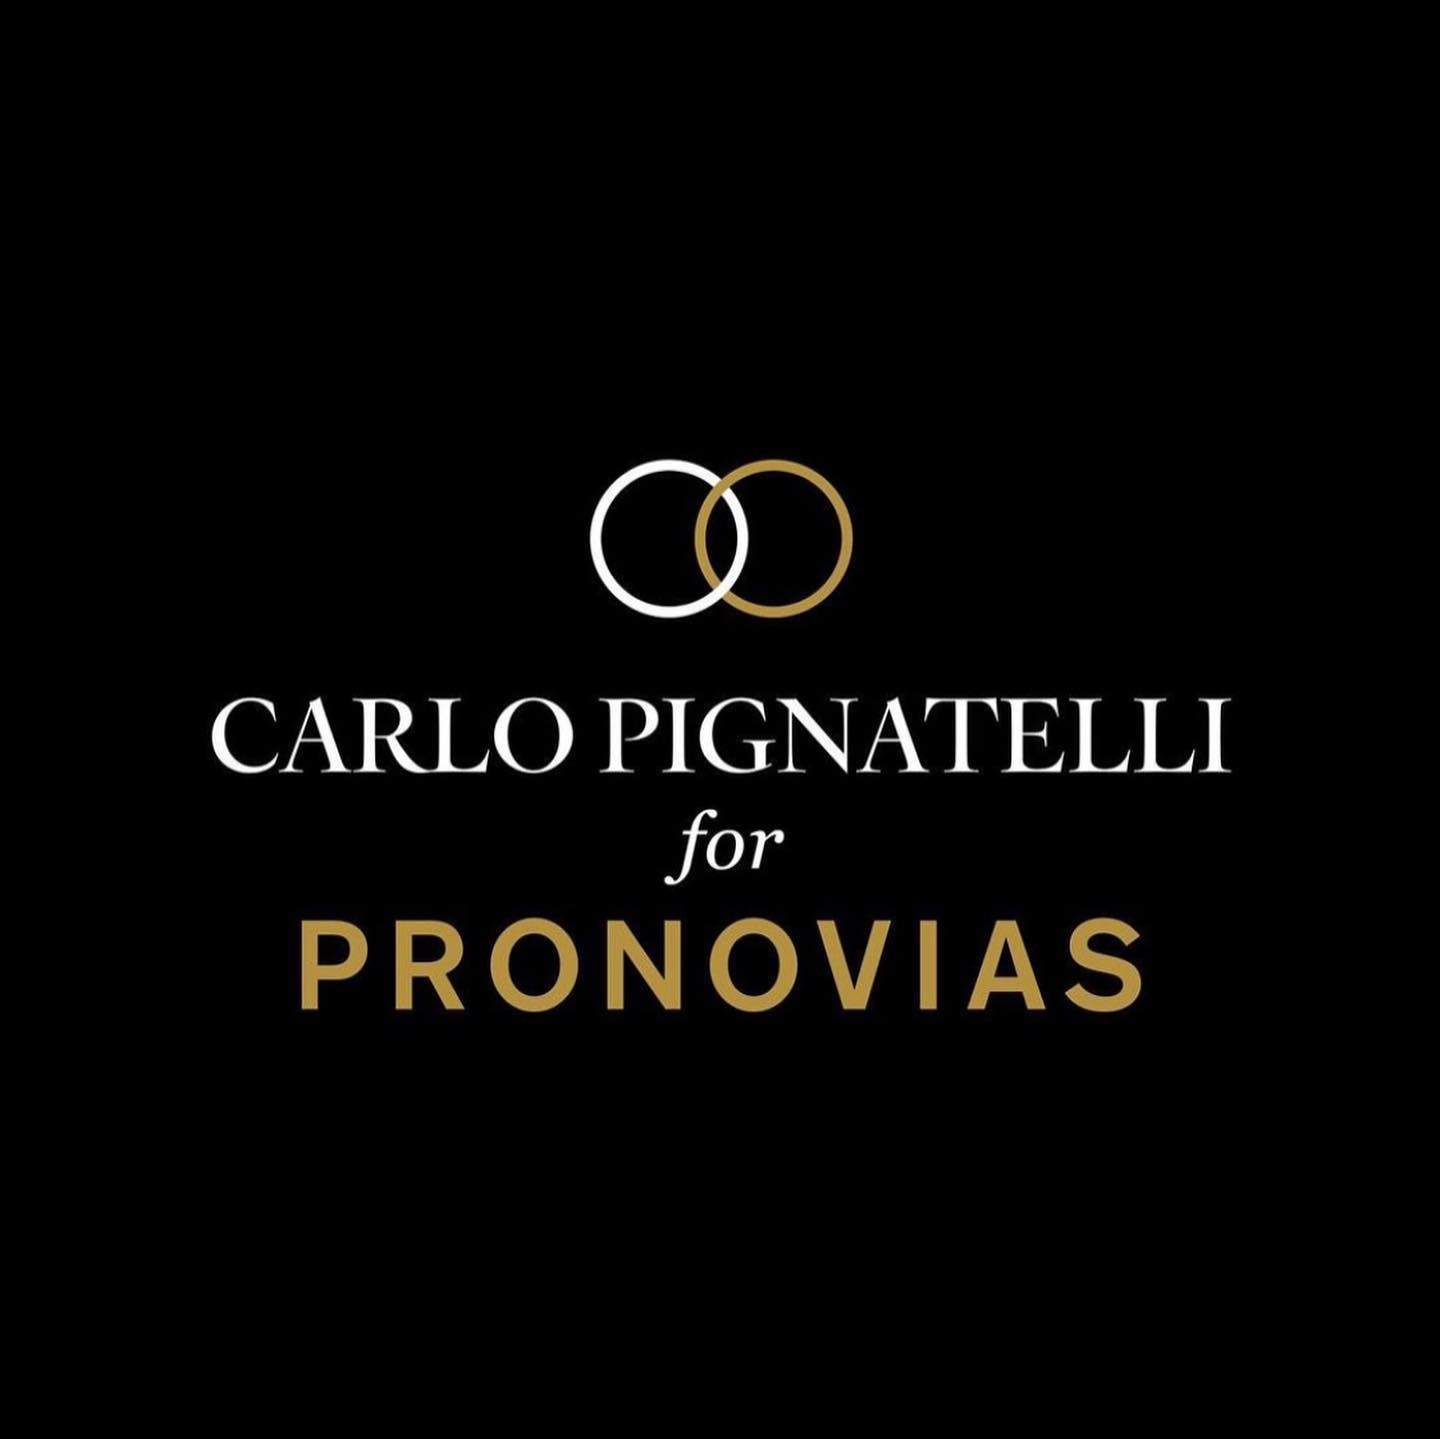 carlo pignatelli for pronovias